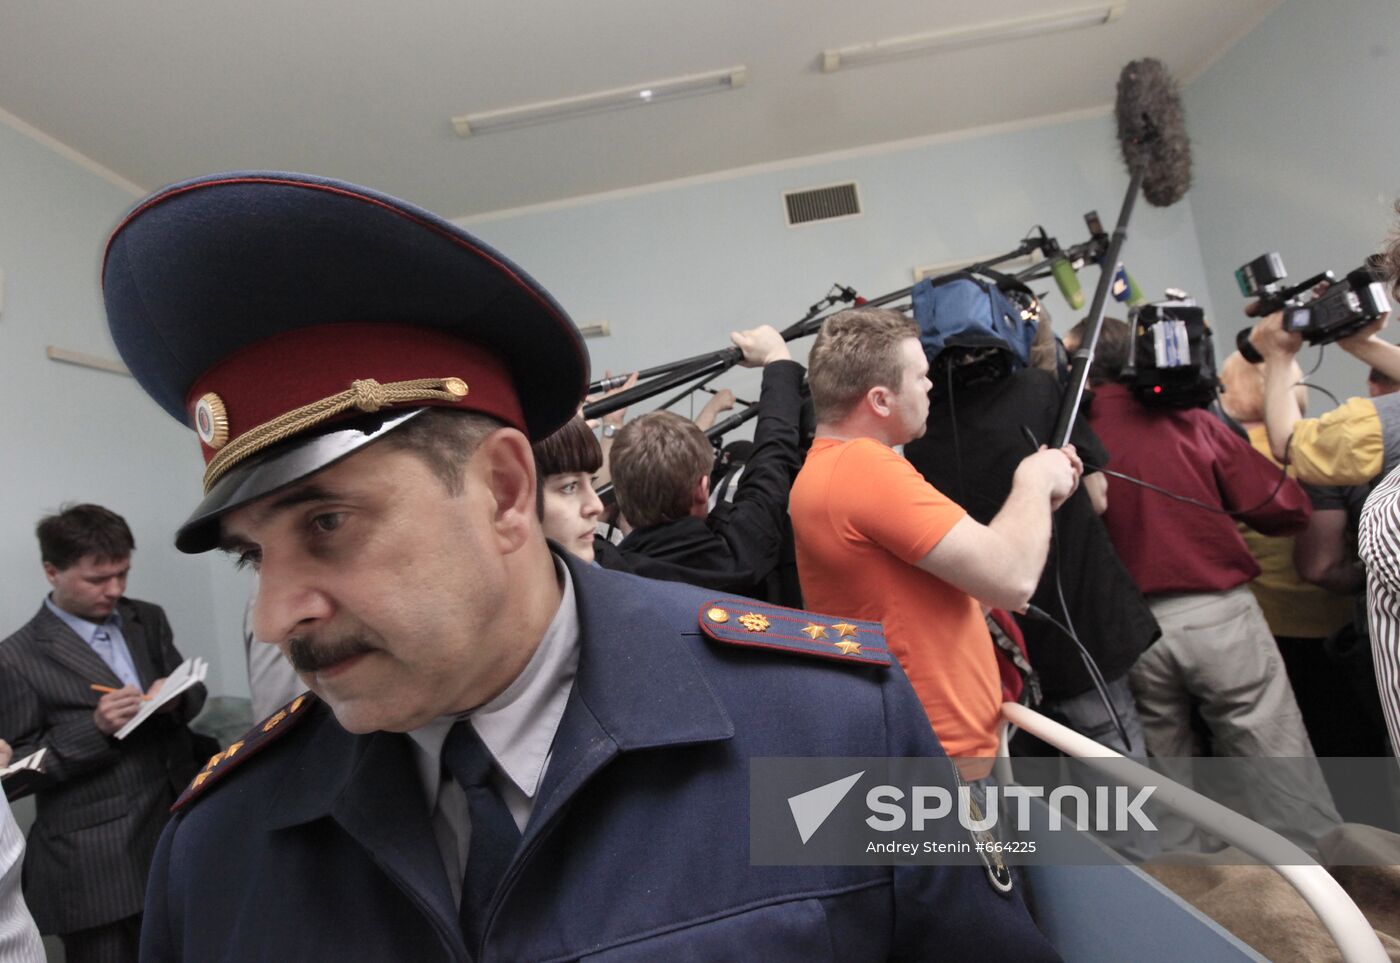 Matrosskaya Tishina detention facility chief Fikret Tagiyev